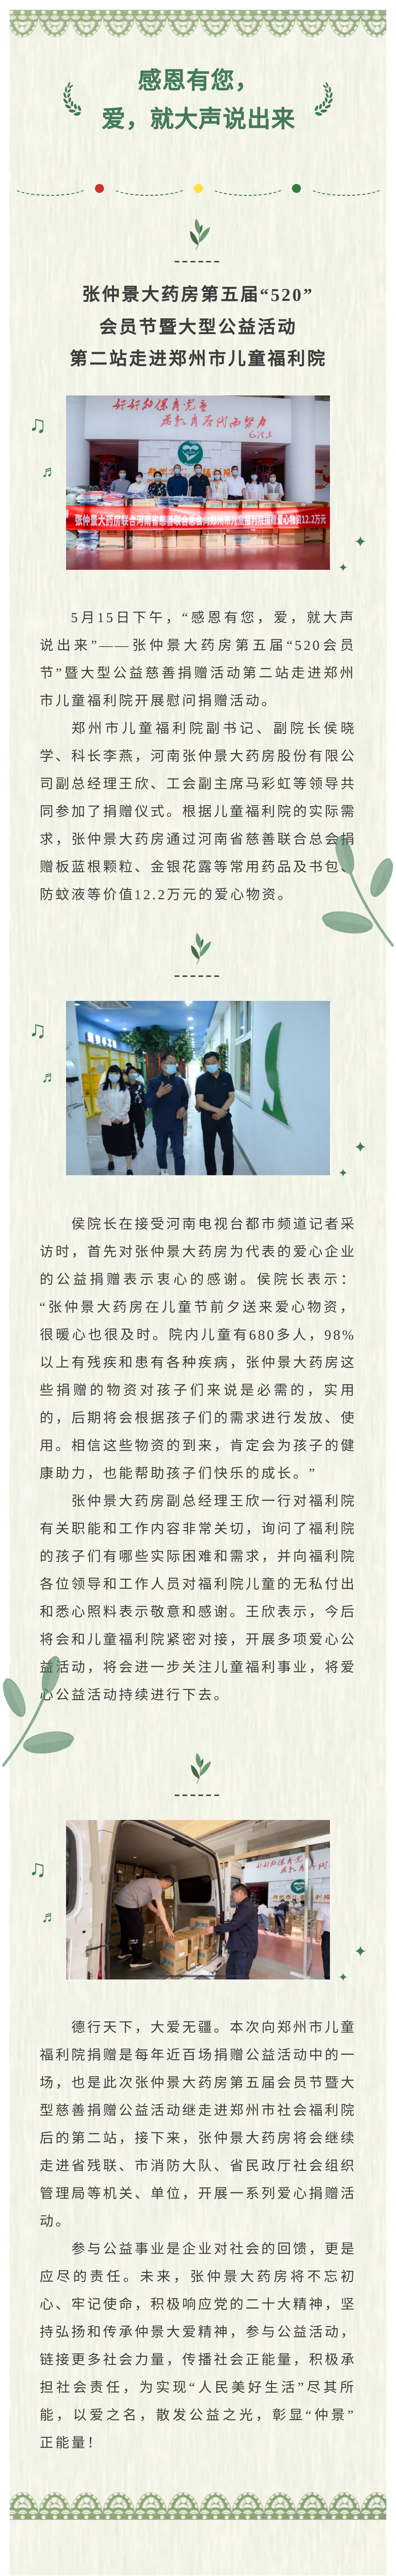 张仲景大药房第五届“520”会员节暨大型公益活动第二站走进郑州市儿童福利院